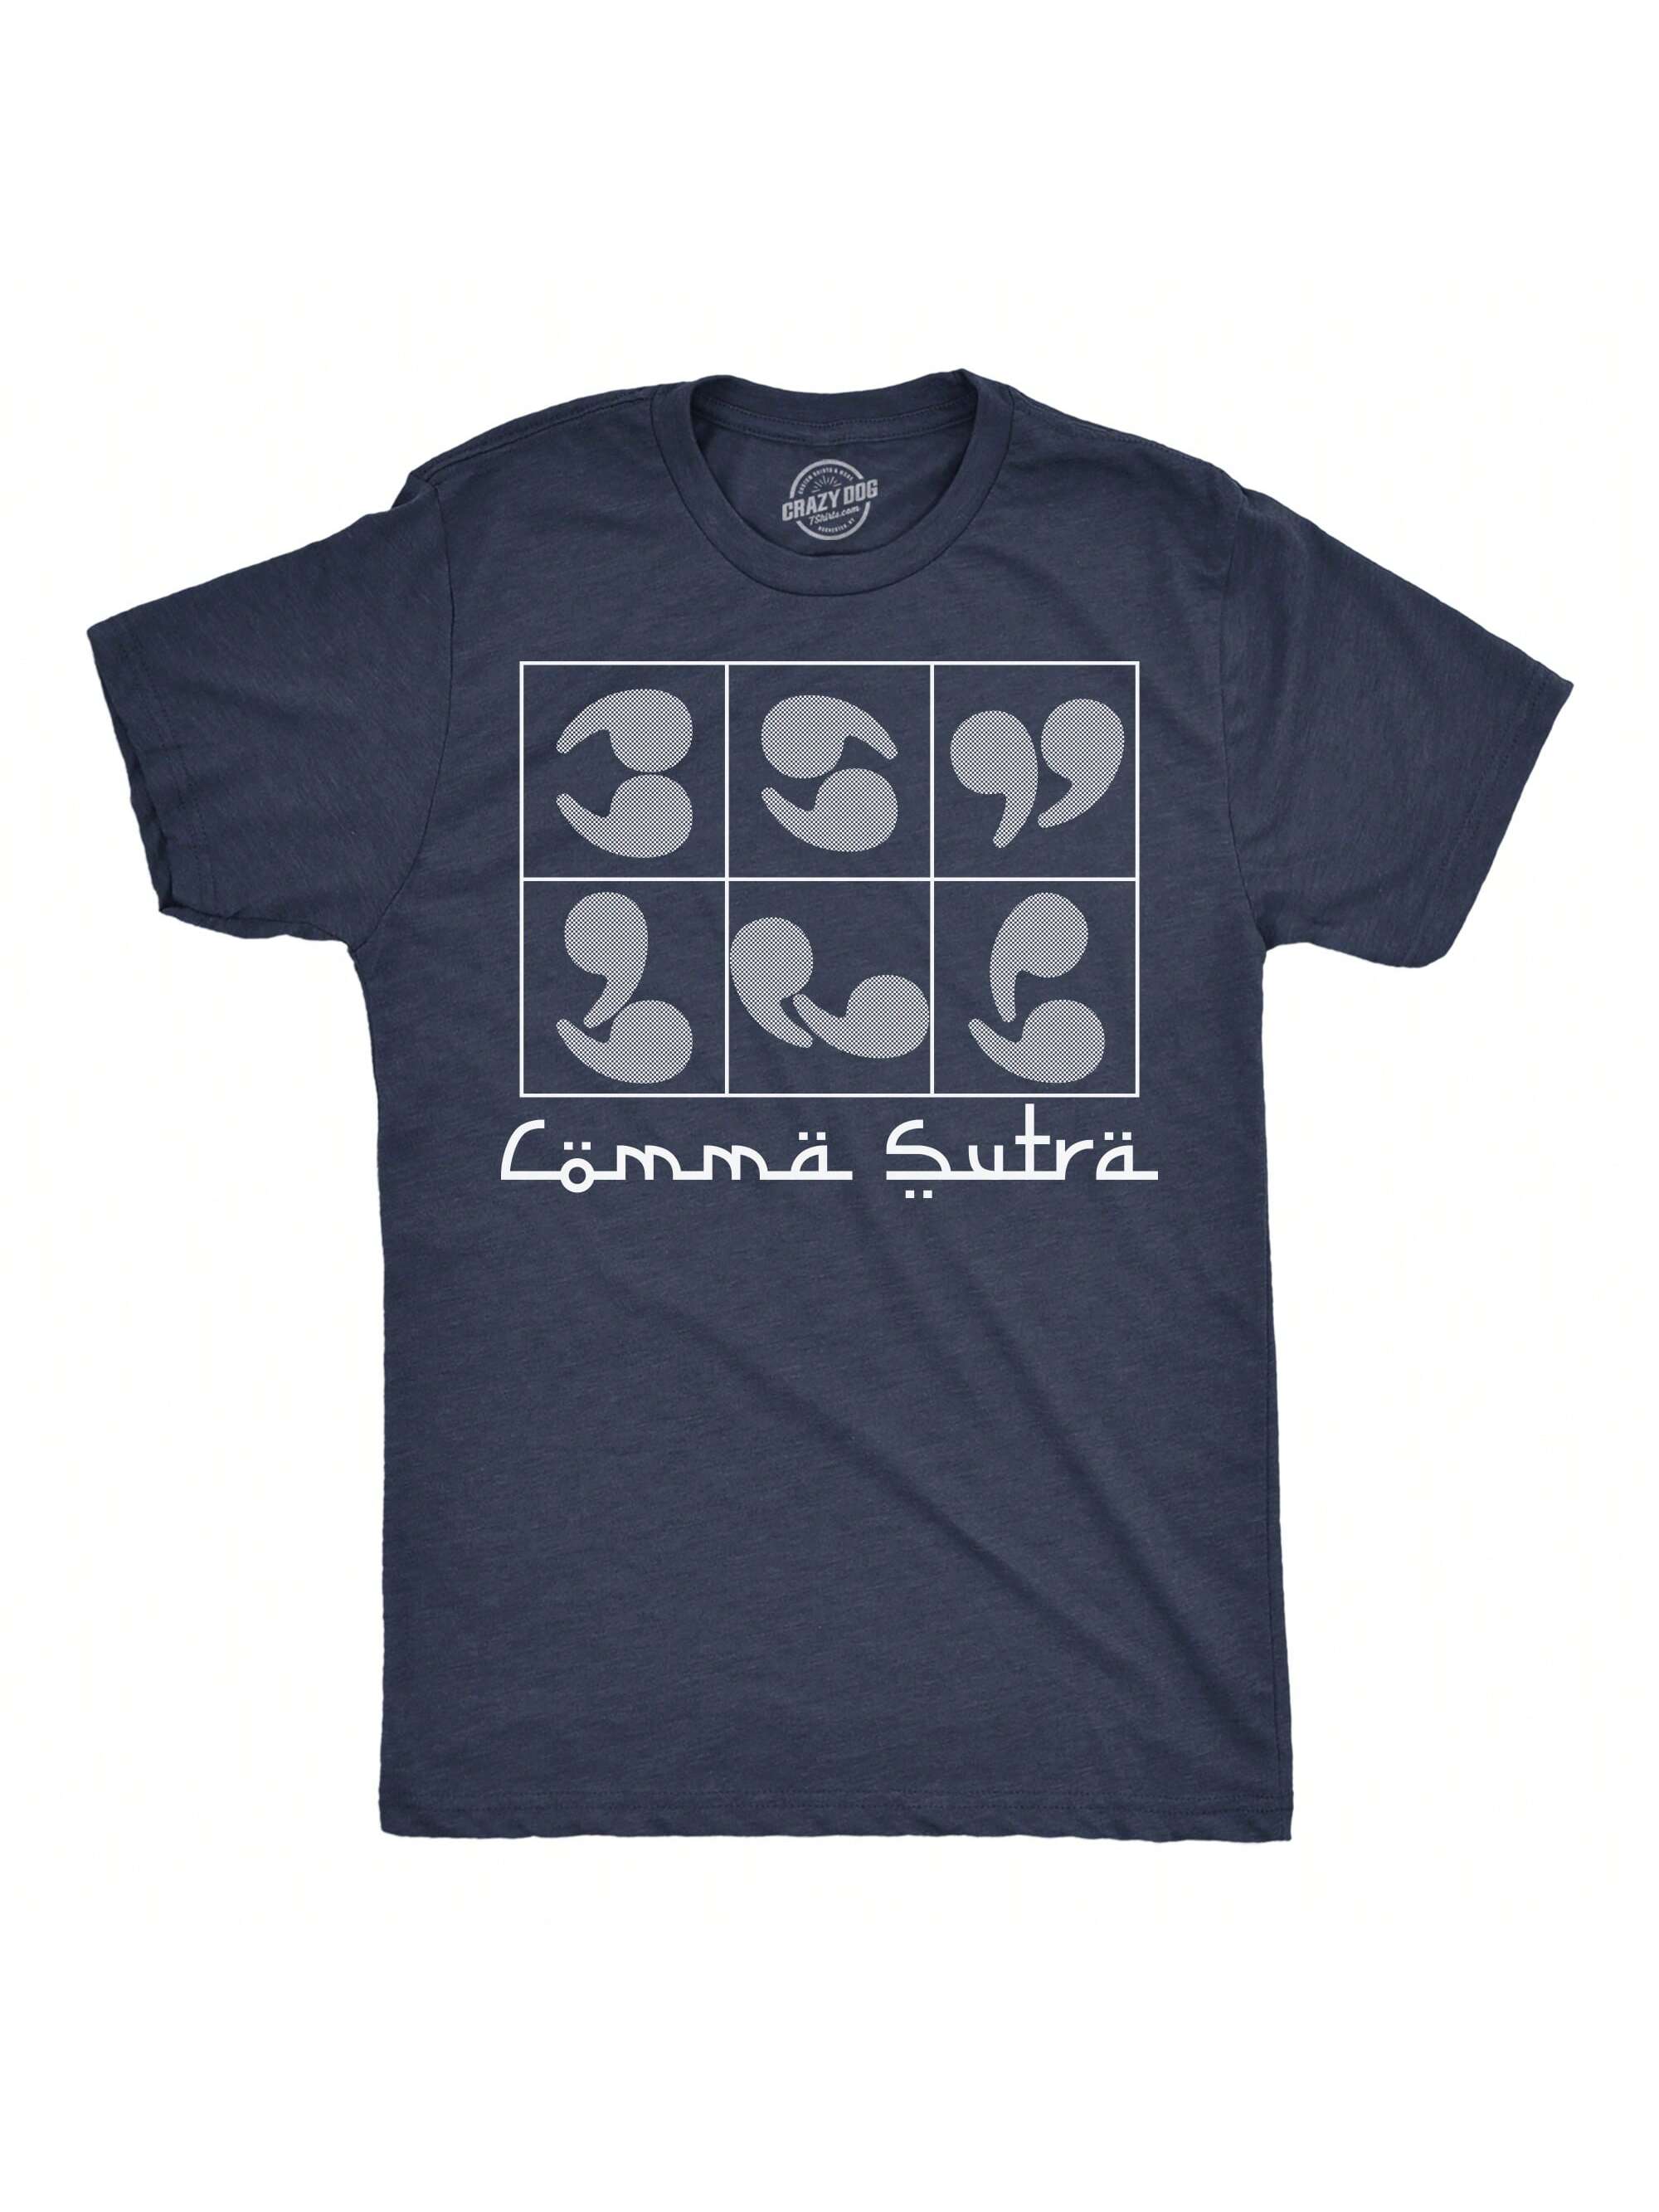 yan lianke heart sutra Мужские забавные футболки Comma Sutra саркастическая футболка с рисунком для мужчин (темно-синий Хизер - Comma Sutra) - L, хизер вмс - запятая сутра